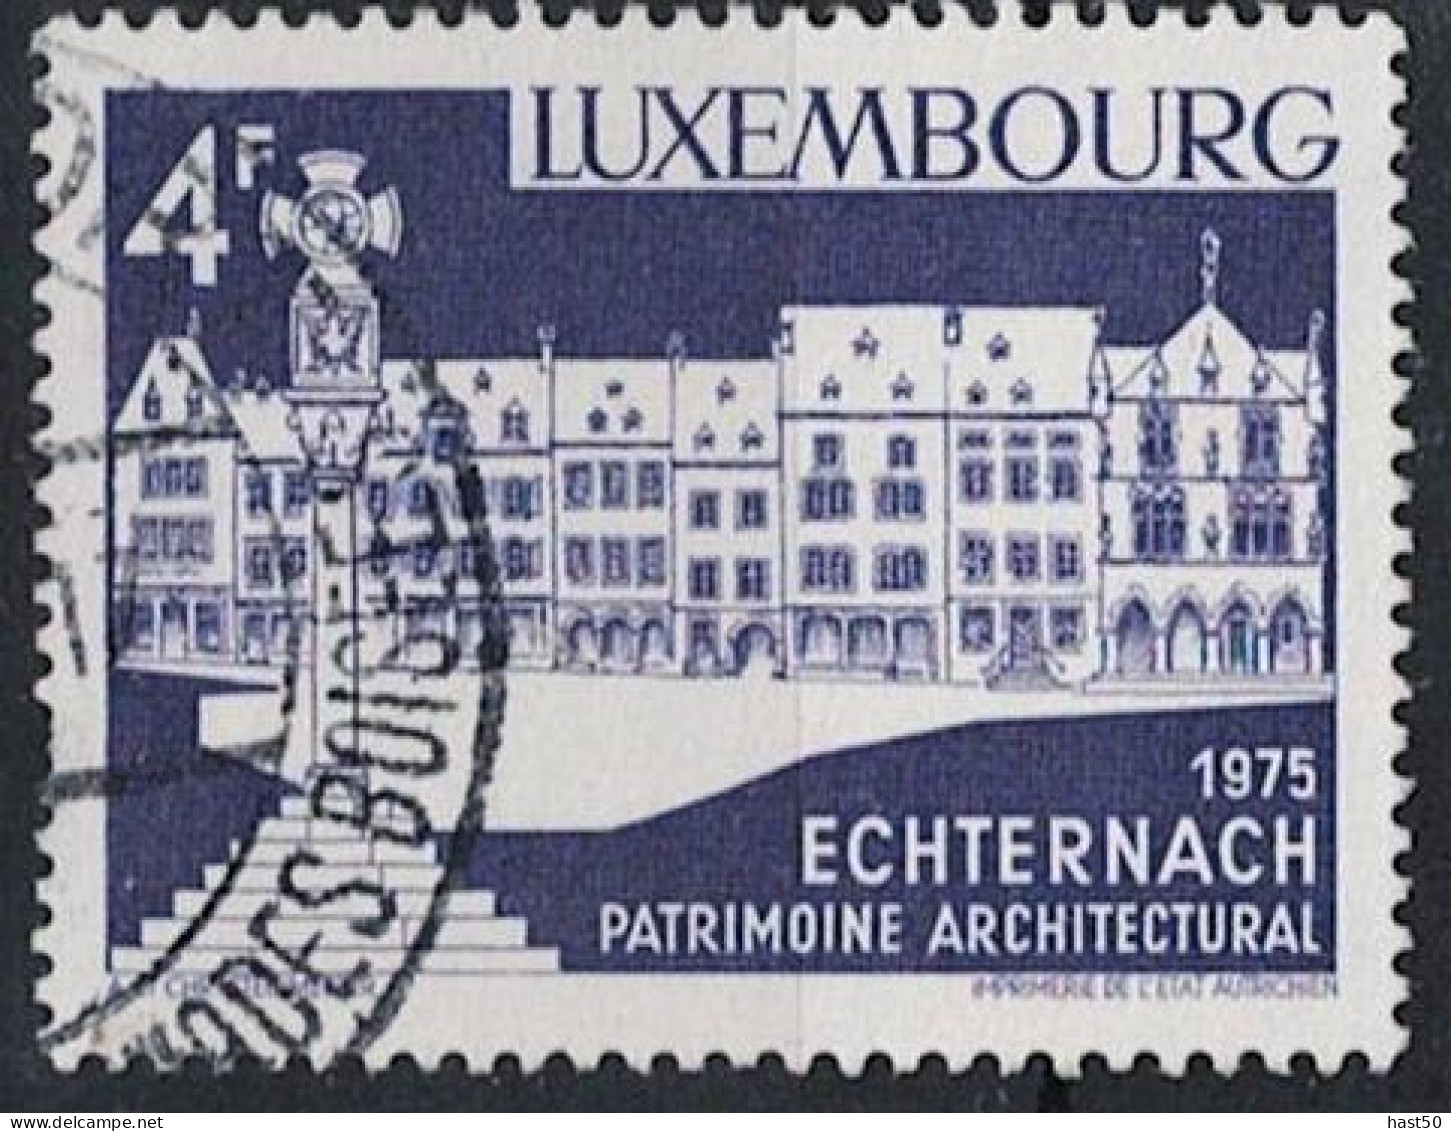 Luxemburg - Echternach, Marktplatz (MiNr: 902) 1975 - Gest Used Obl - Gebraucht